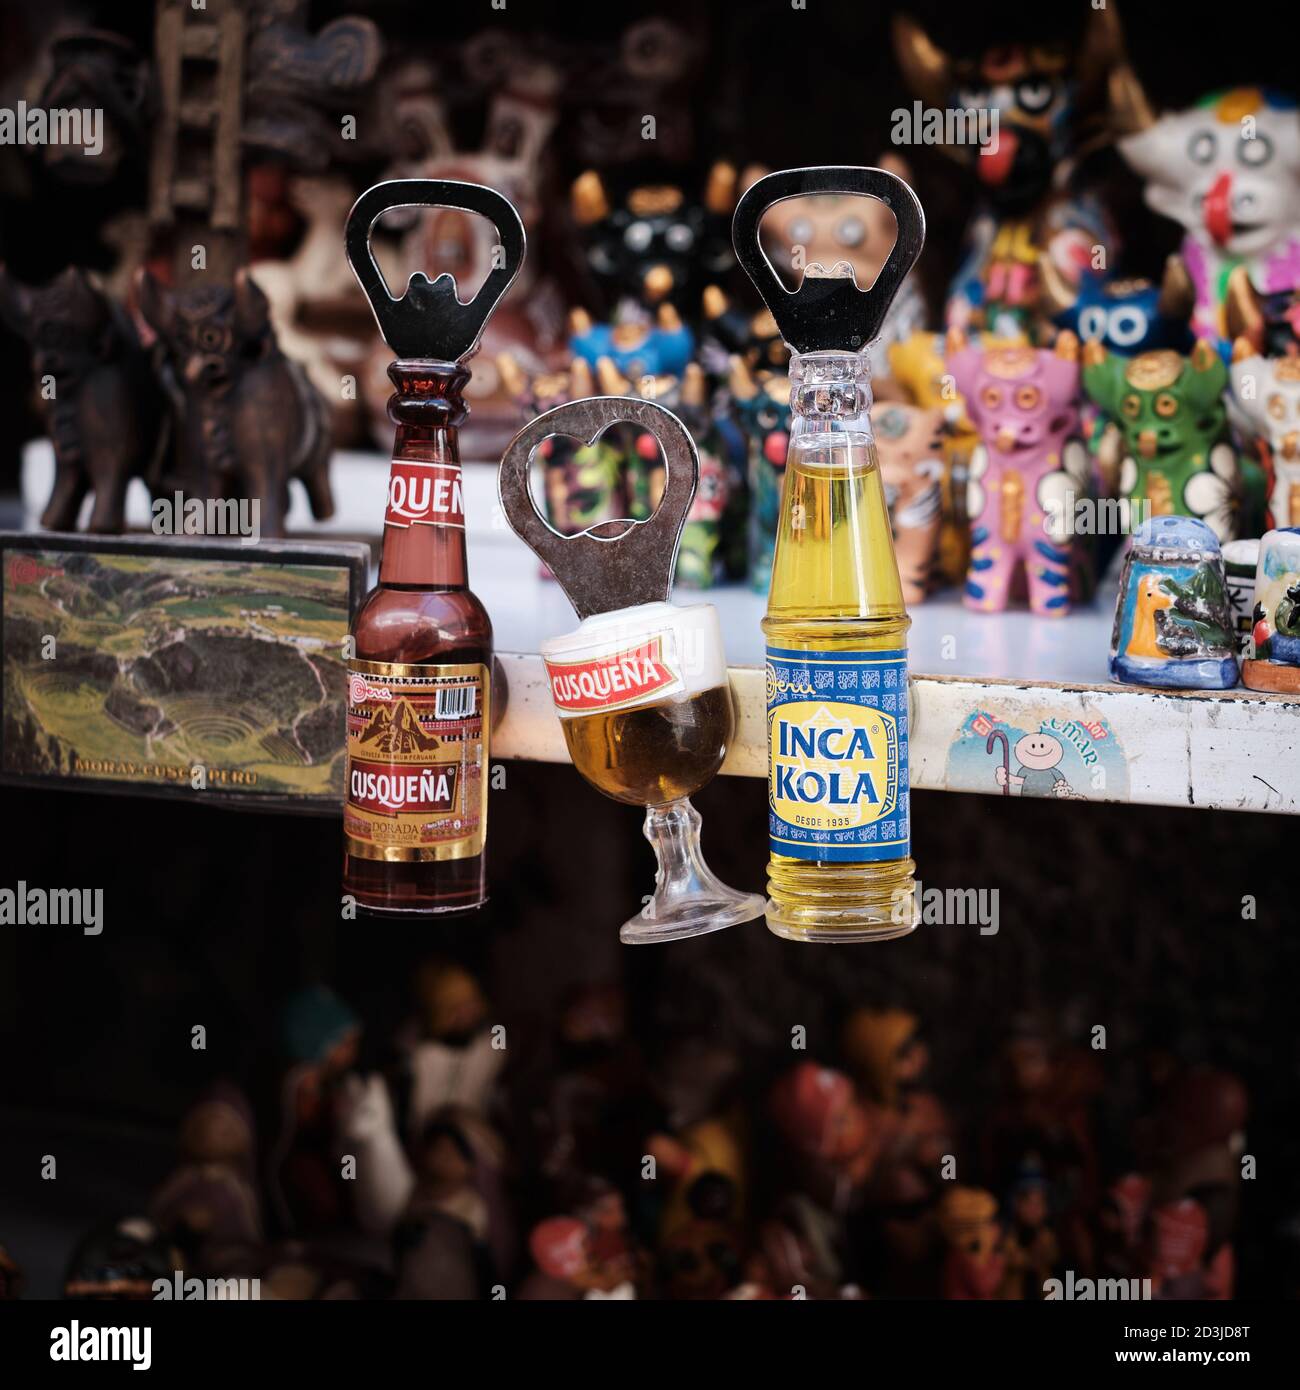 Ouvre-bouteilles de la bière Cusquena et de l'Inca Kola dans une cabine souvenir du marché Pisac Pisaq, au Pérou Banque D'Images